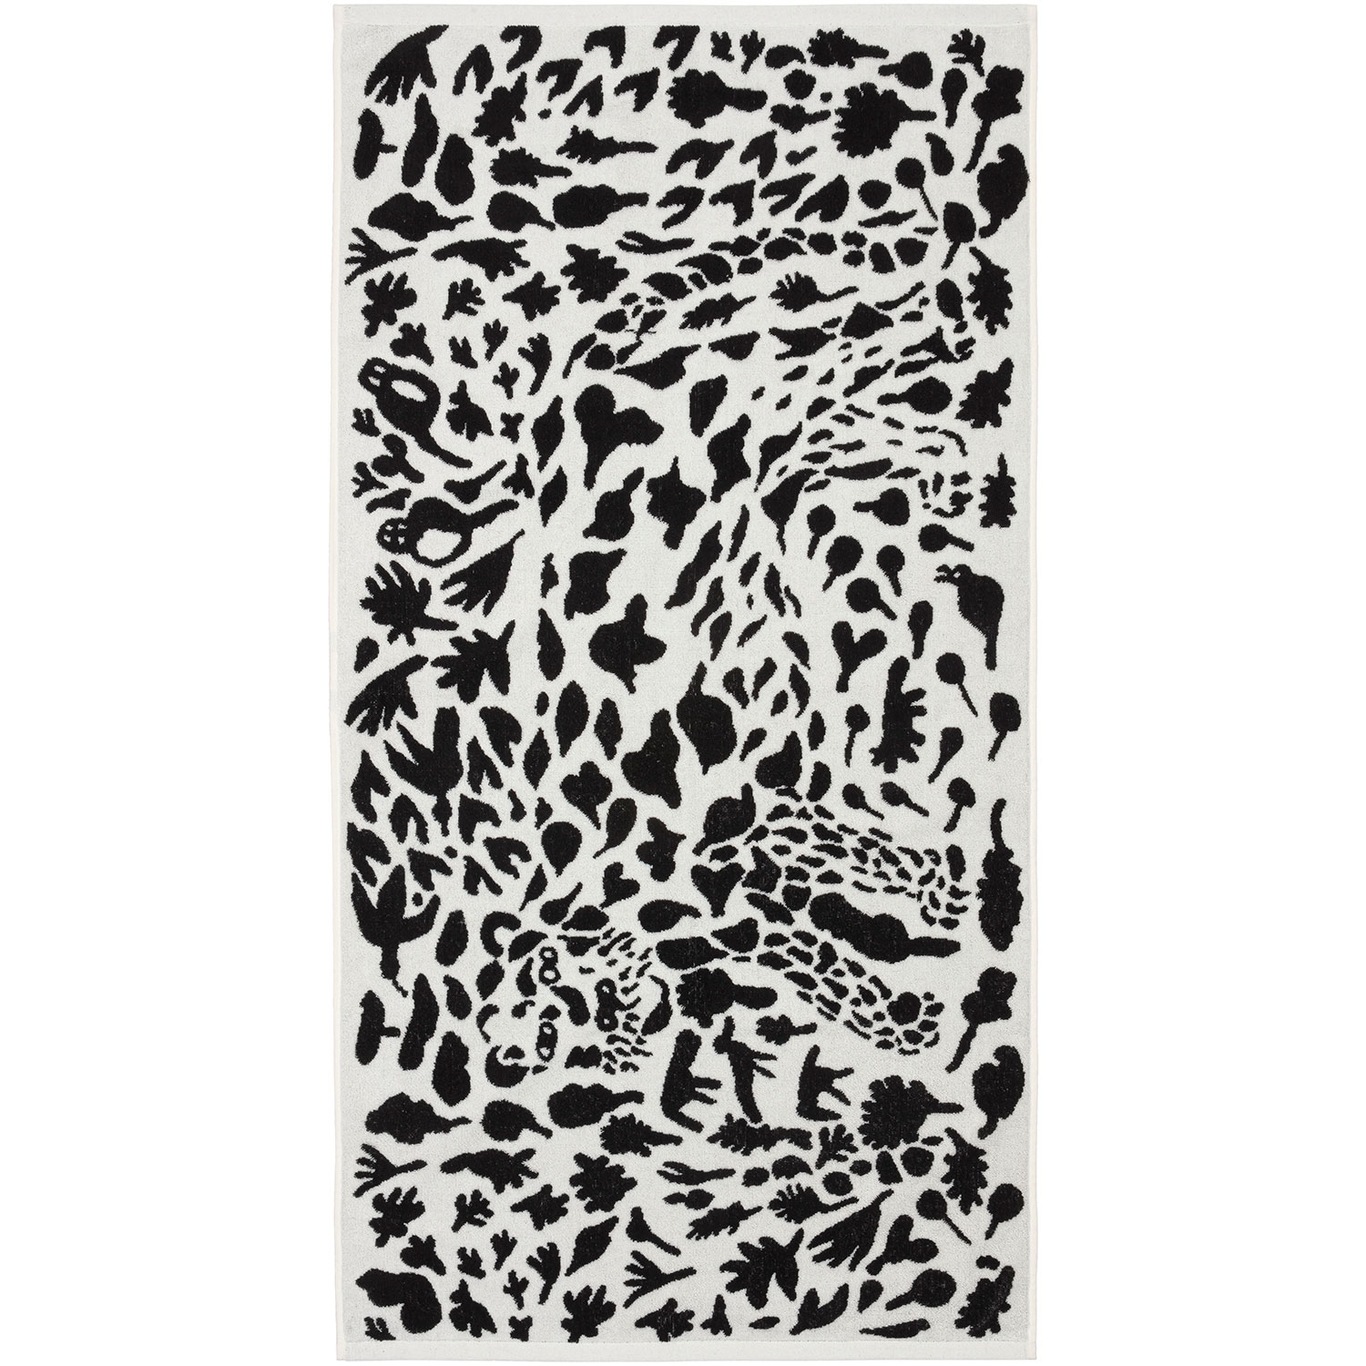 Oiva Toikka Collection Handduk, 70x140 cm, Cheetah